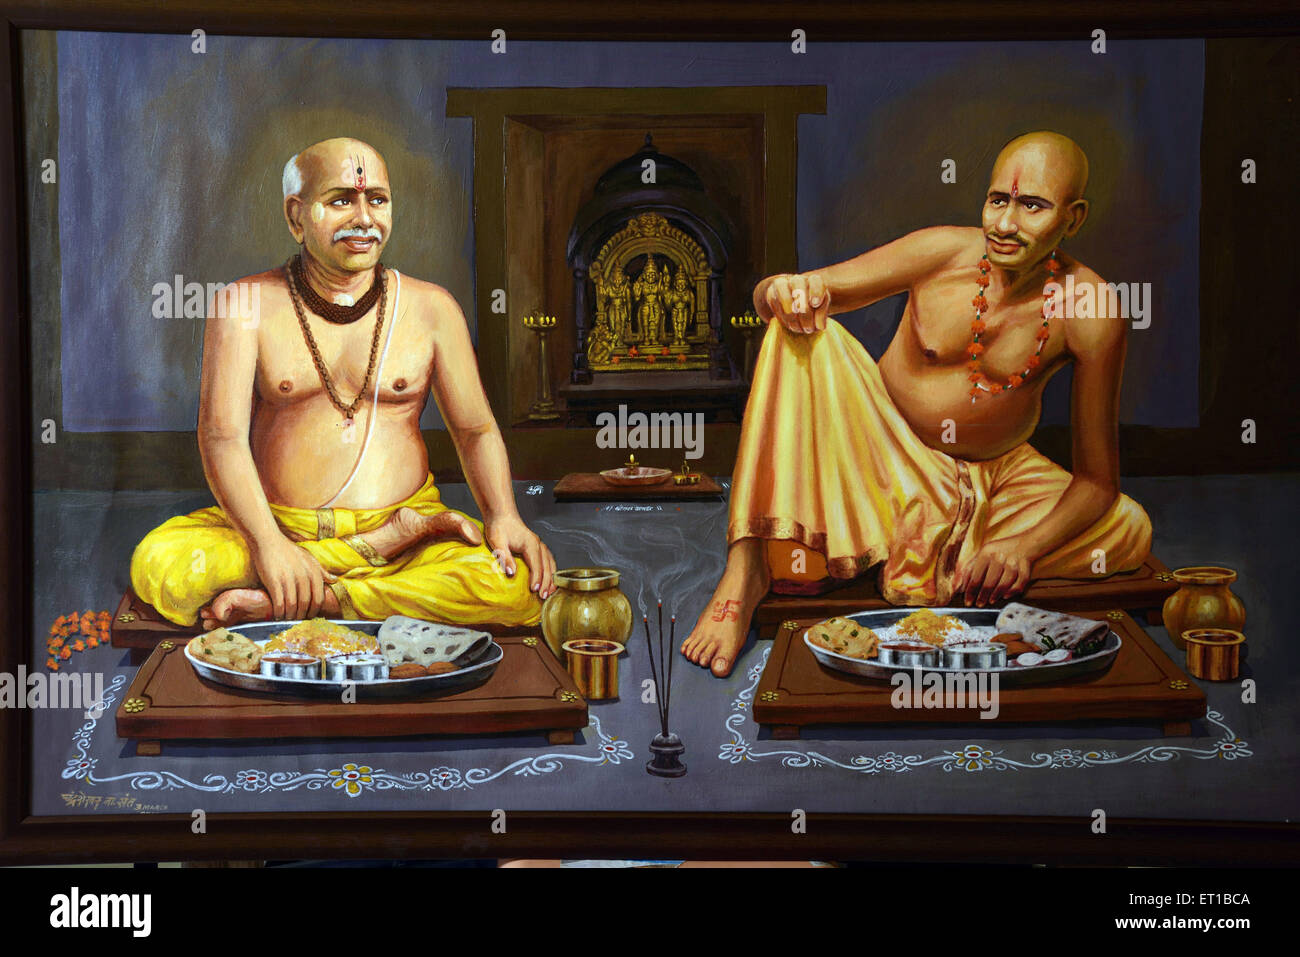 Gajanan spirituelle peinture Maharaj prenant le déjeuner Asie Inde Banque D'Images